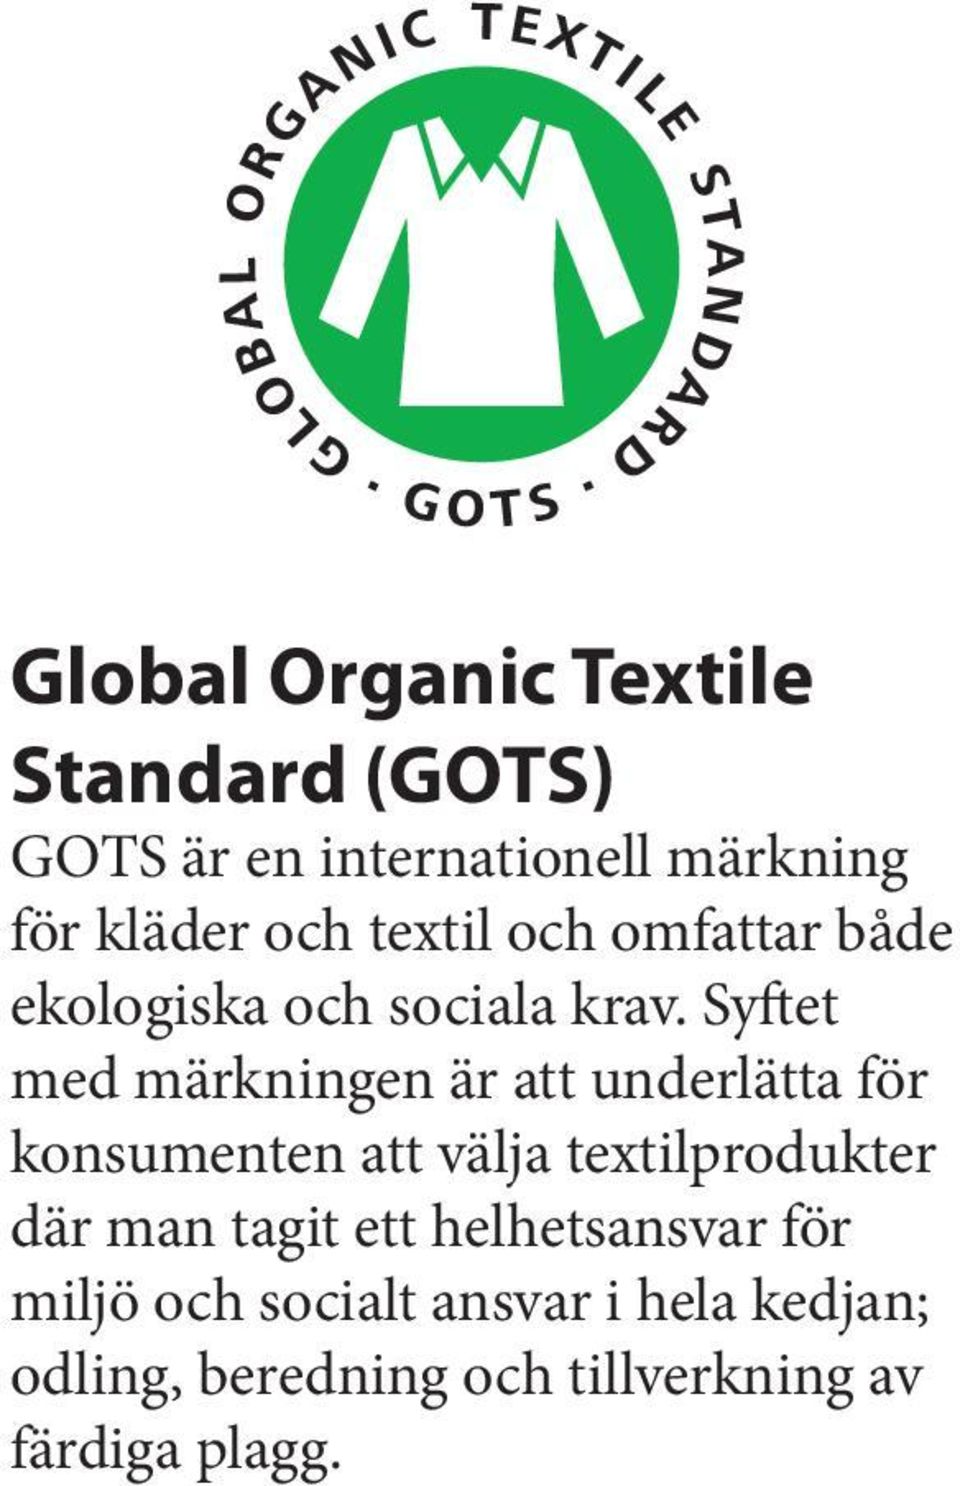 Syftet med märkningen är att underlätta för konsumenten att välja textilprodukter där